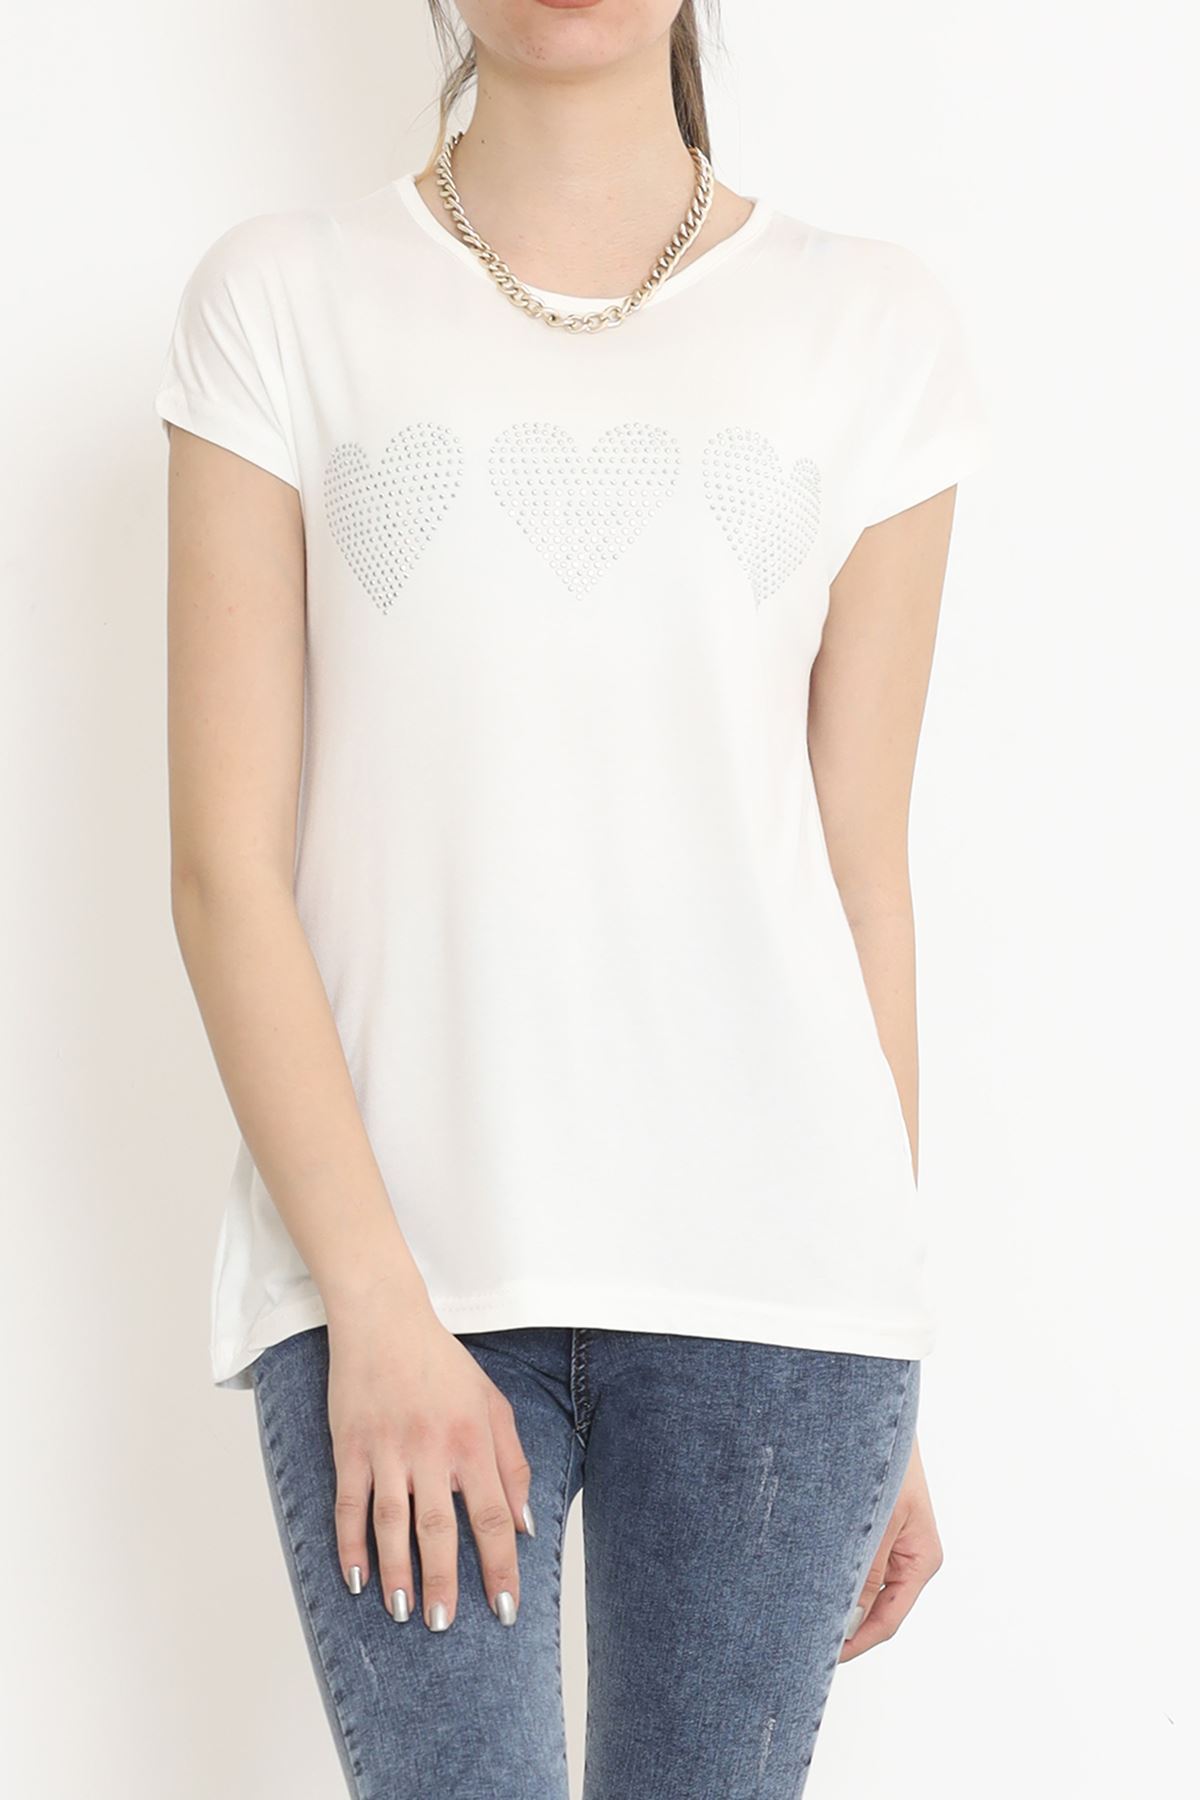 Kalp İşlemeli Bluz Beyaz - 17128.599.